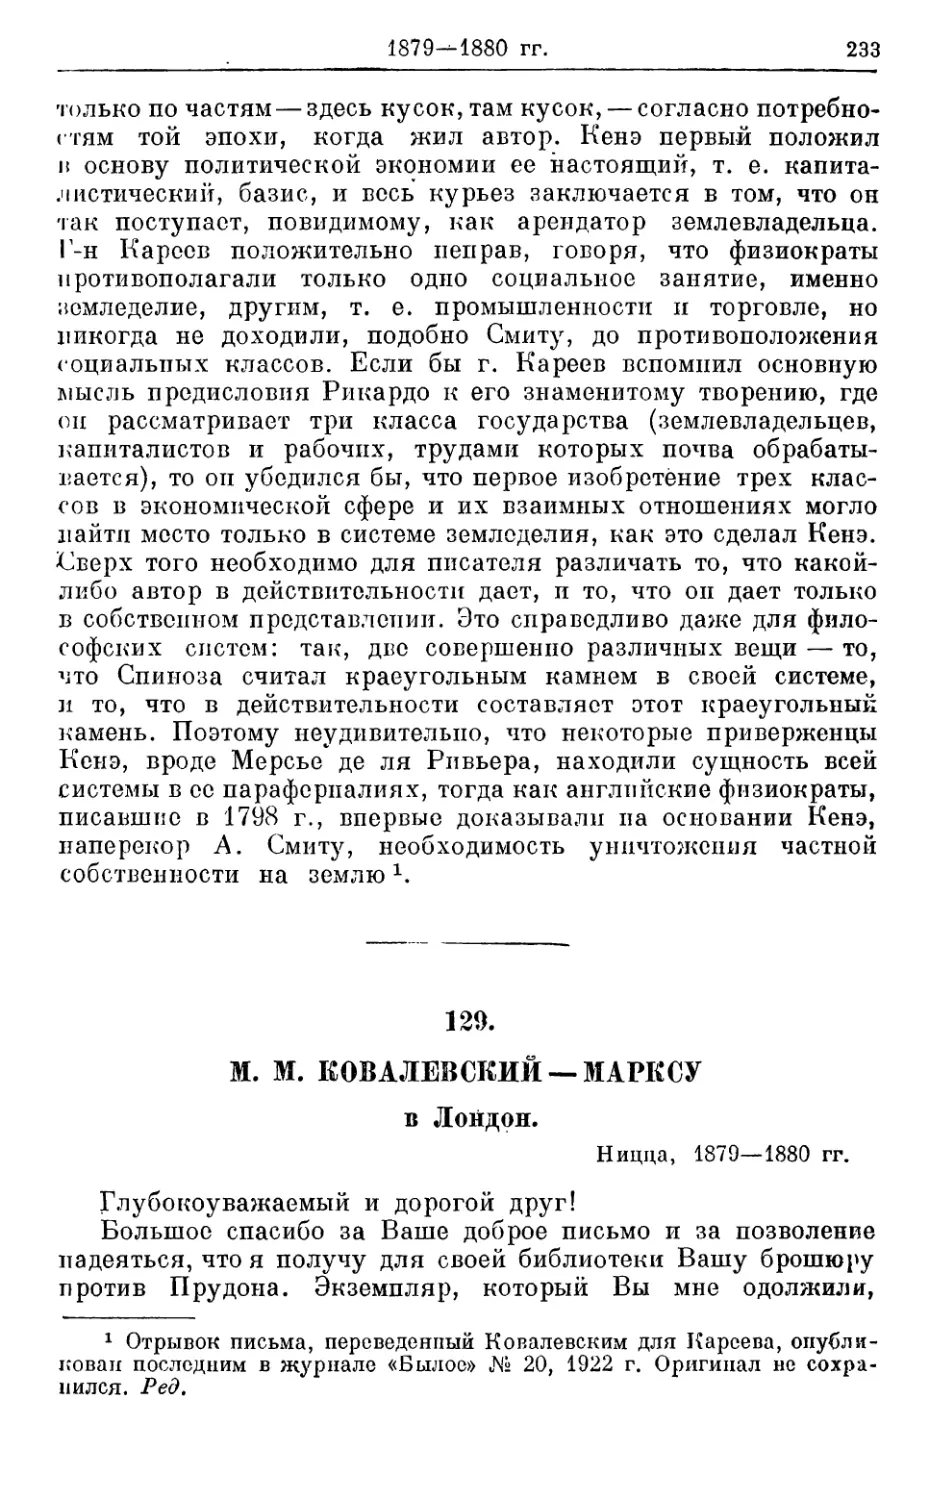 129. Ковалевский — Марксу, 1879—1880гг